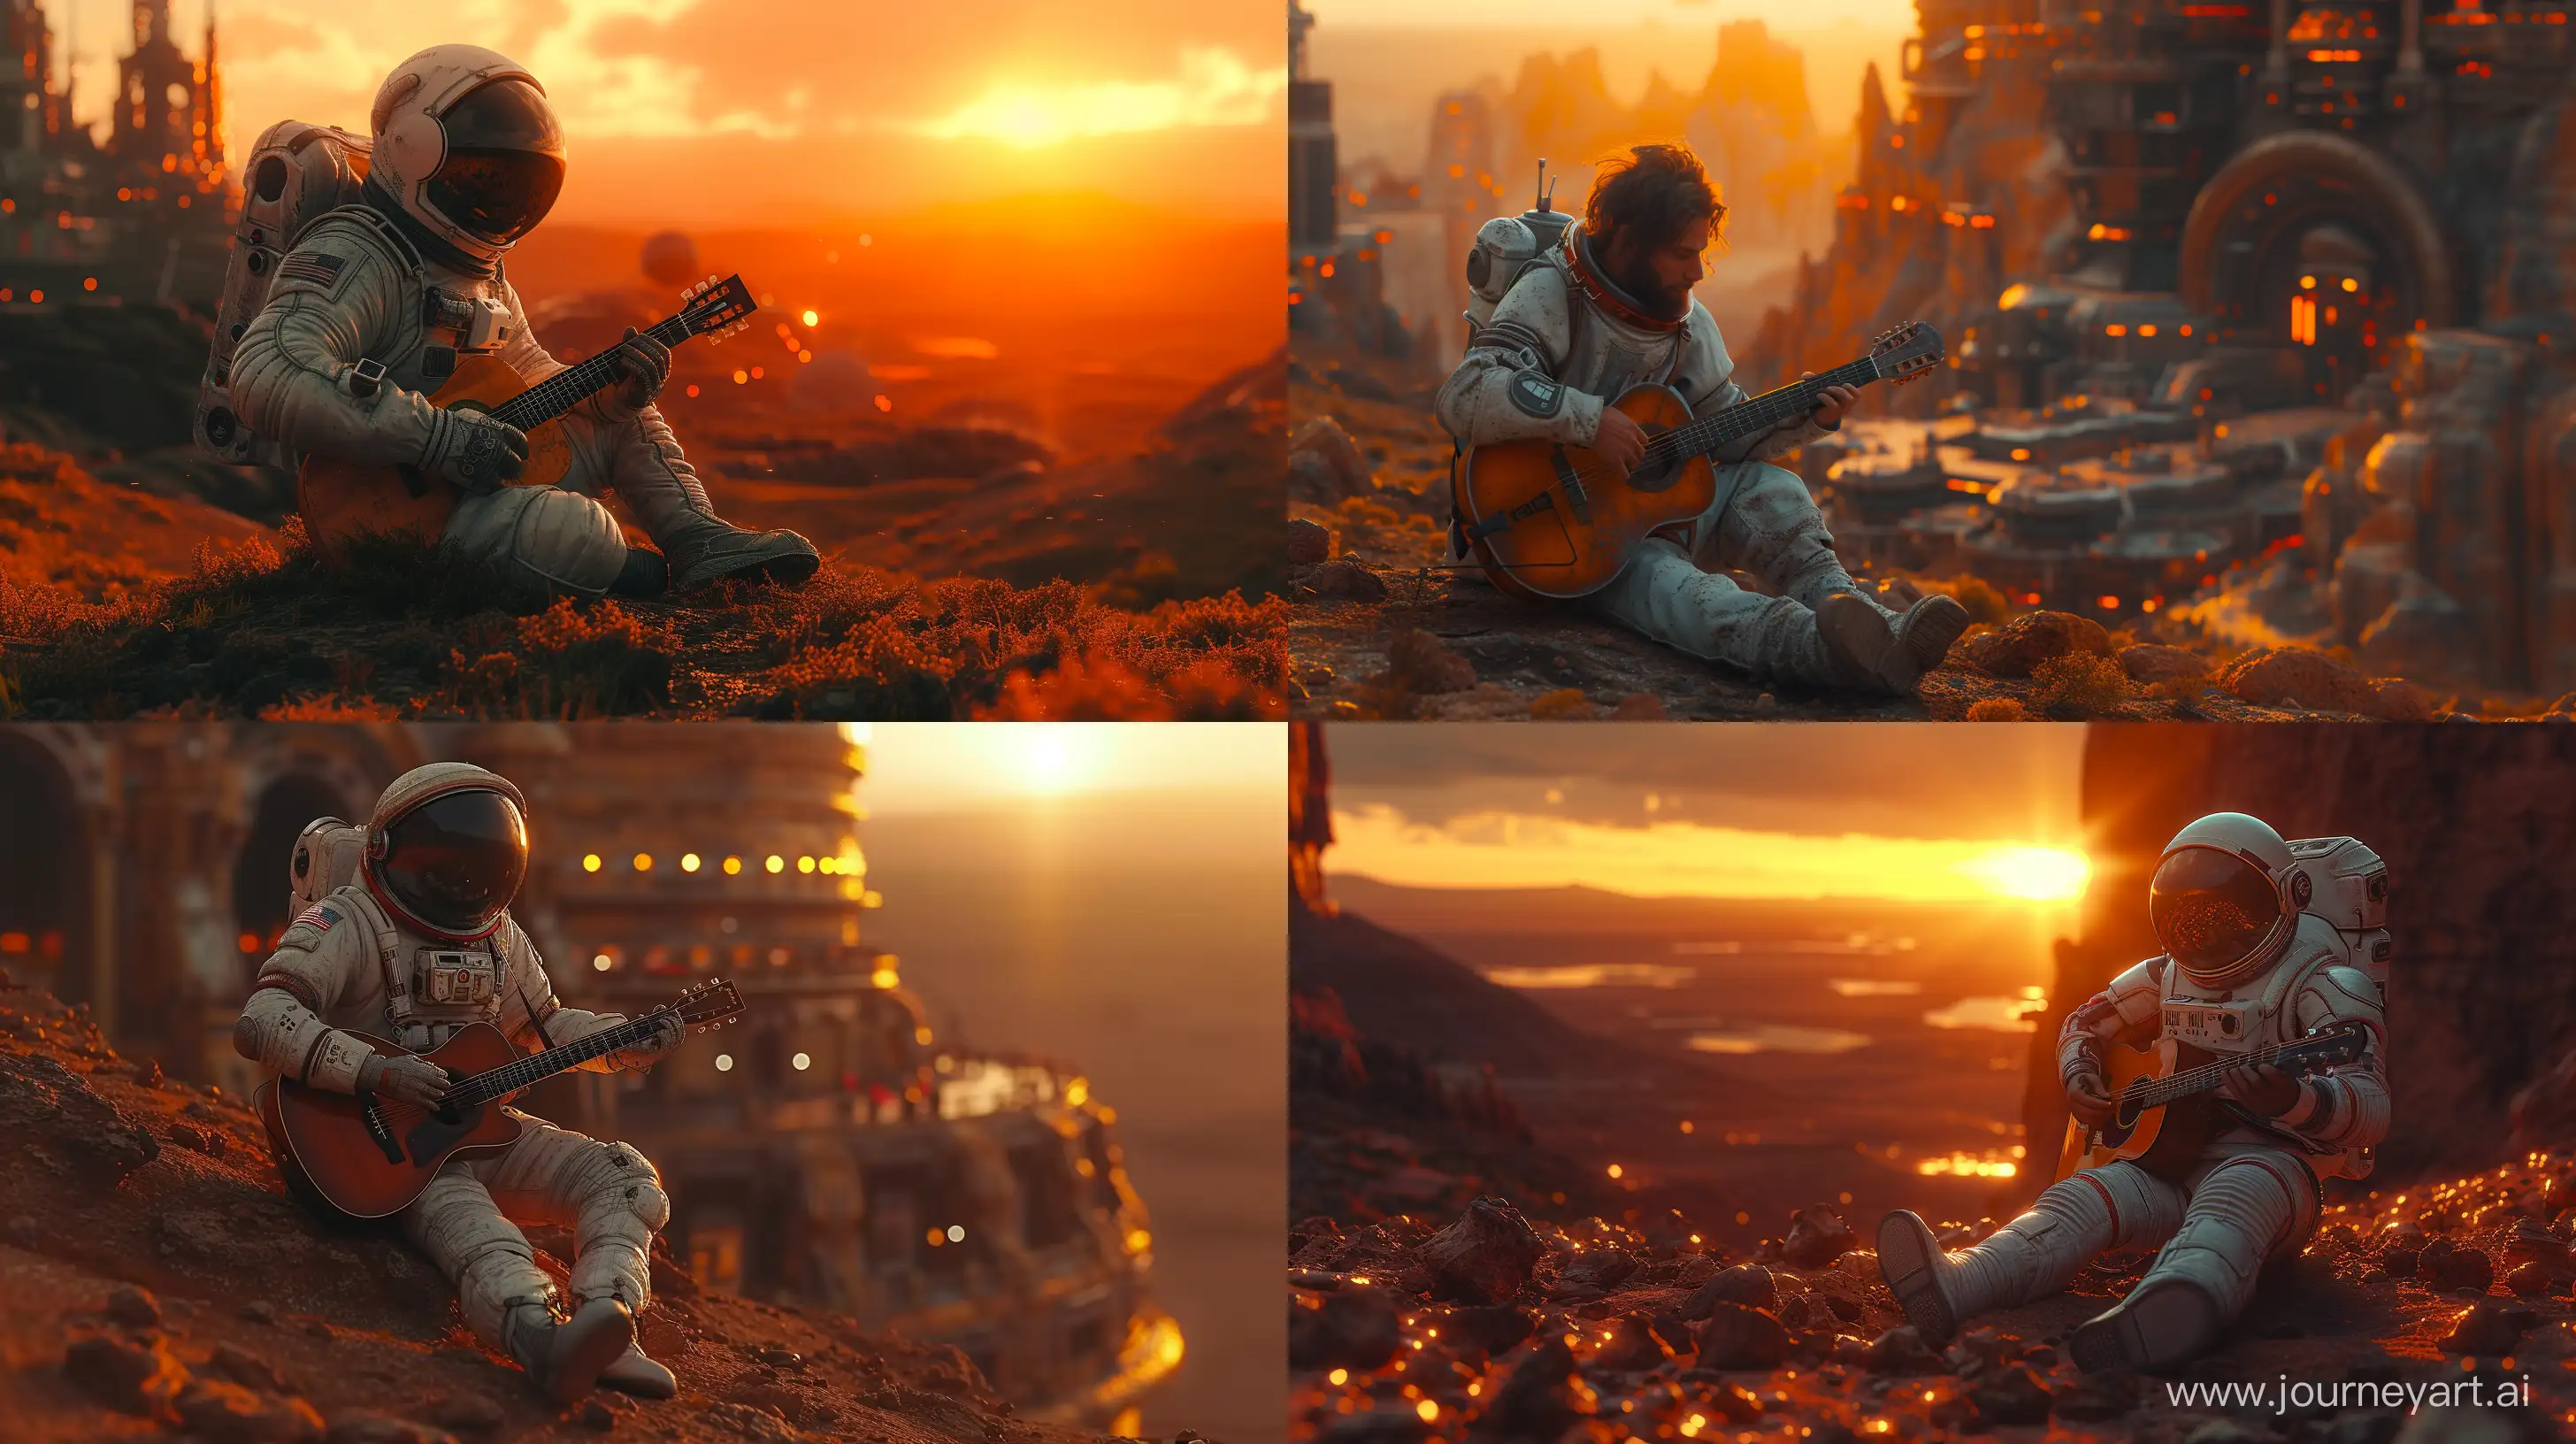 Futuristic-Astronaut-Serenading-Mars-Guitarist-at-Alien-Outpost-Sunset